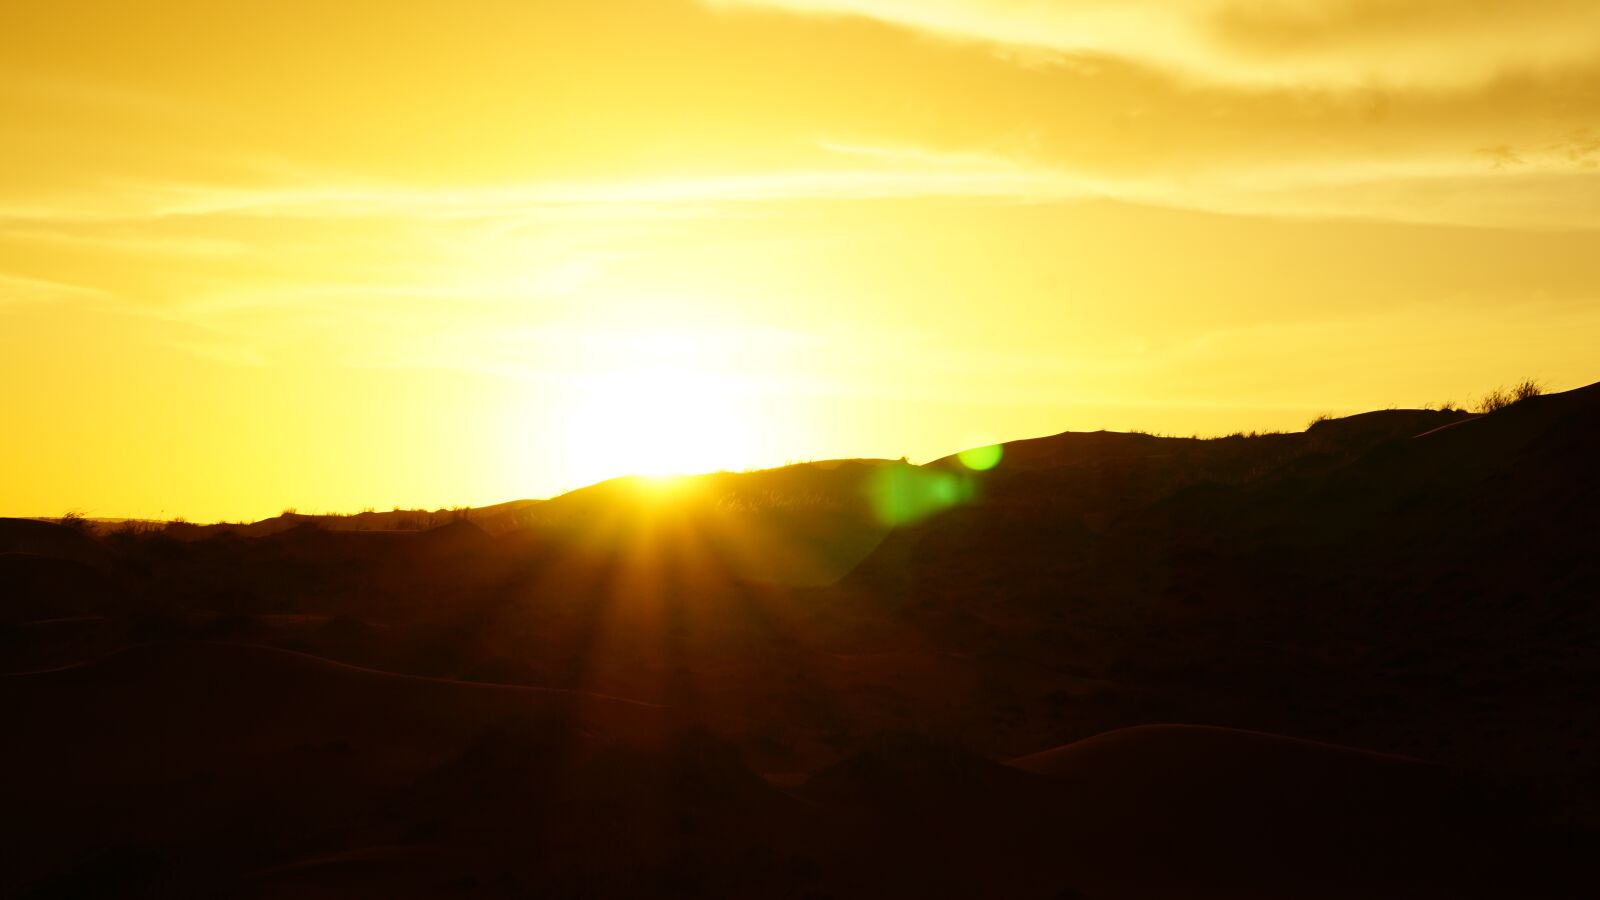 Sony E 55-210mm F4.5-6.3 OSS sample photo. Sunset, sossuvlei, dune photography